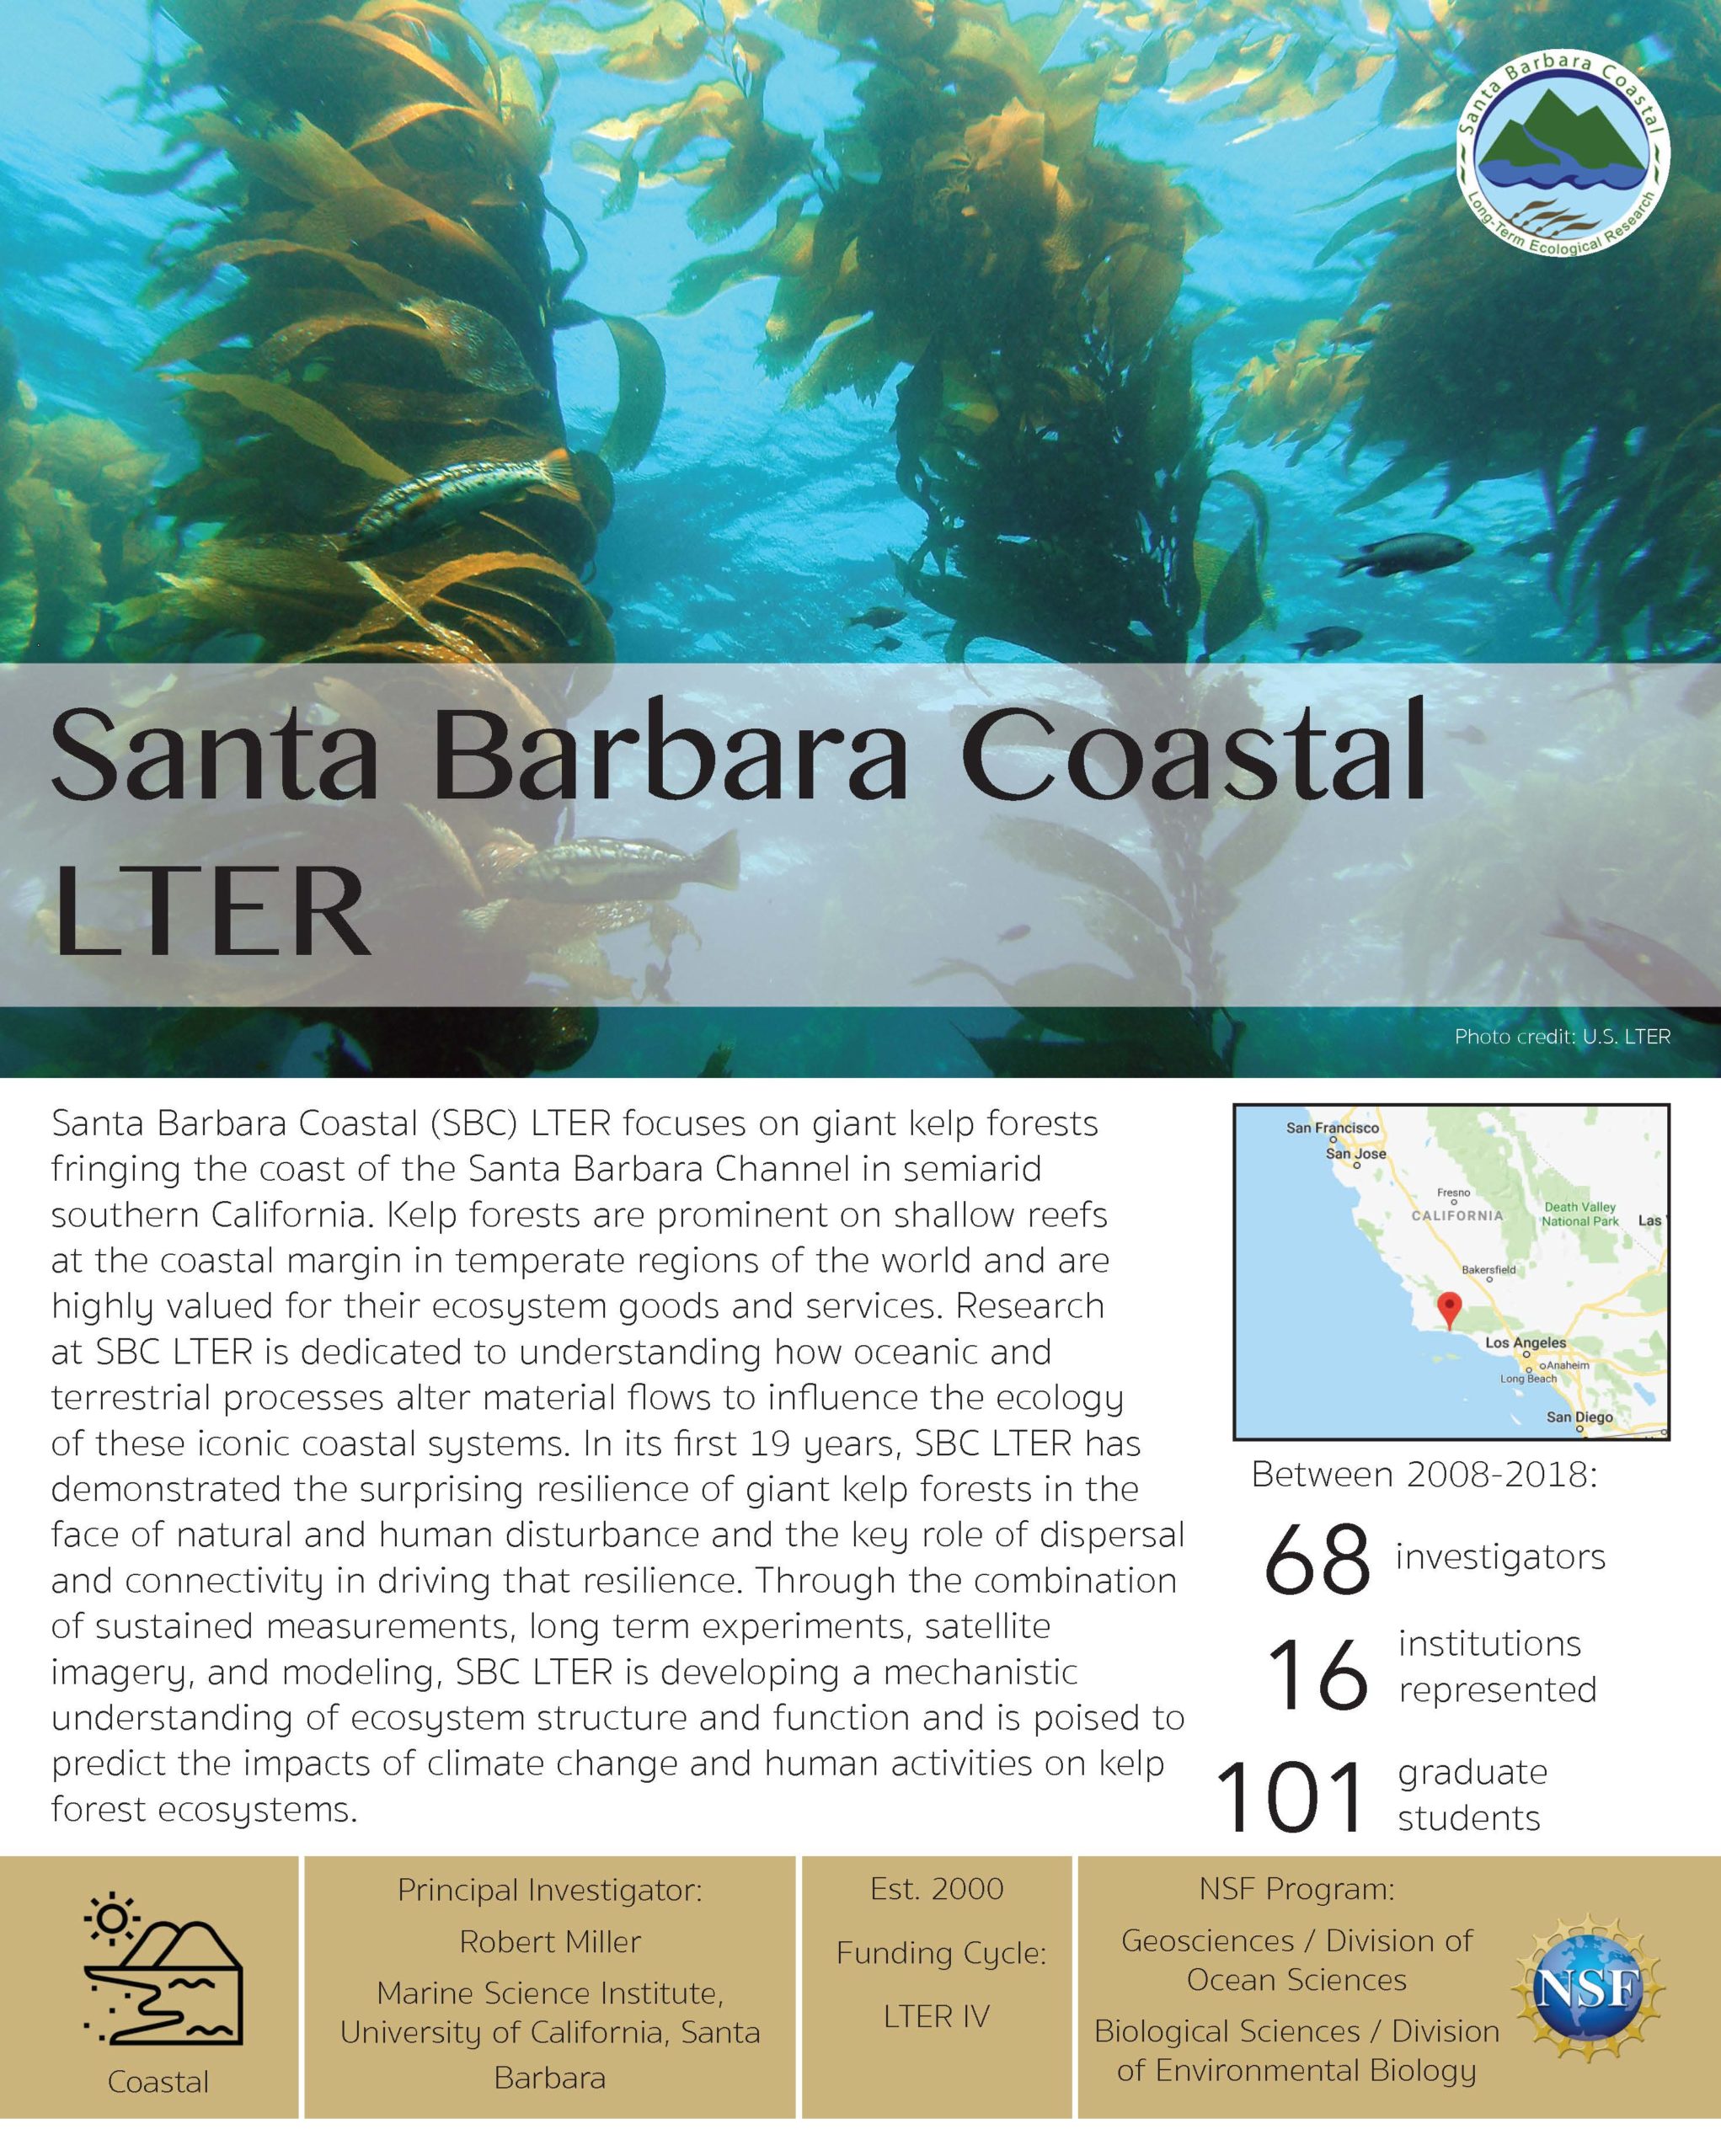 Santa Barbara Coastal LTER site brief 2019